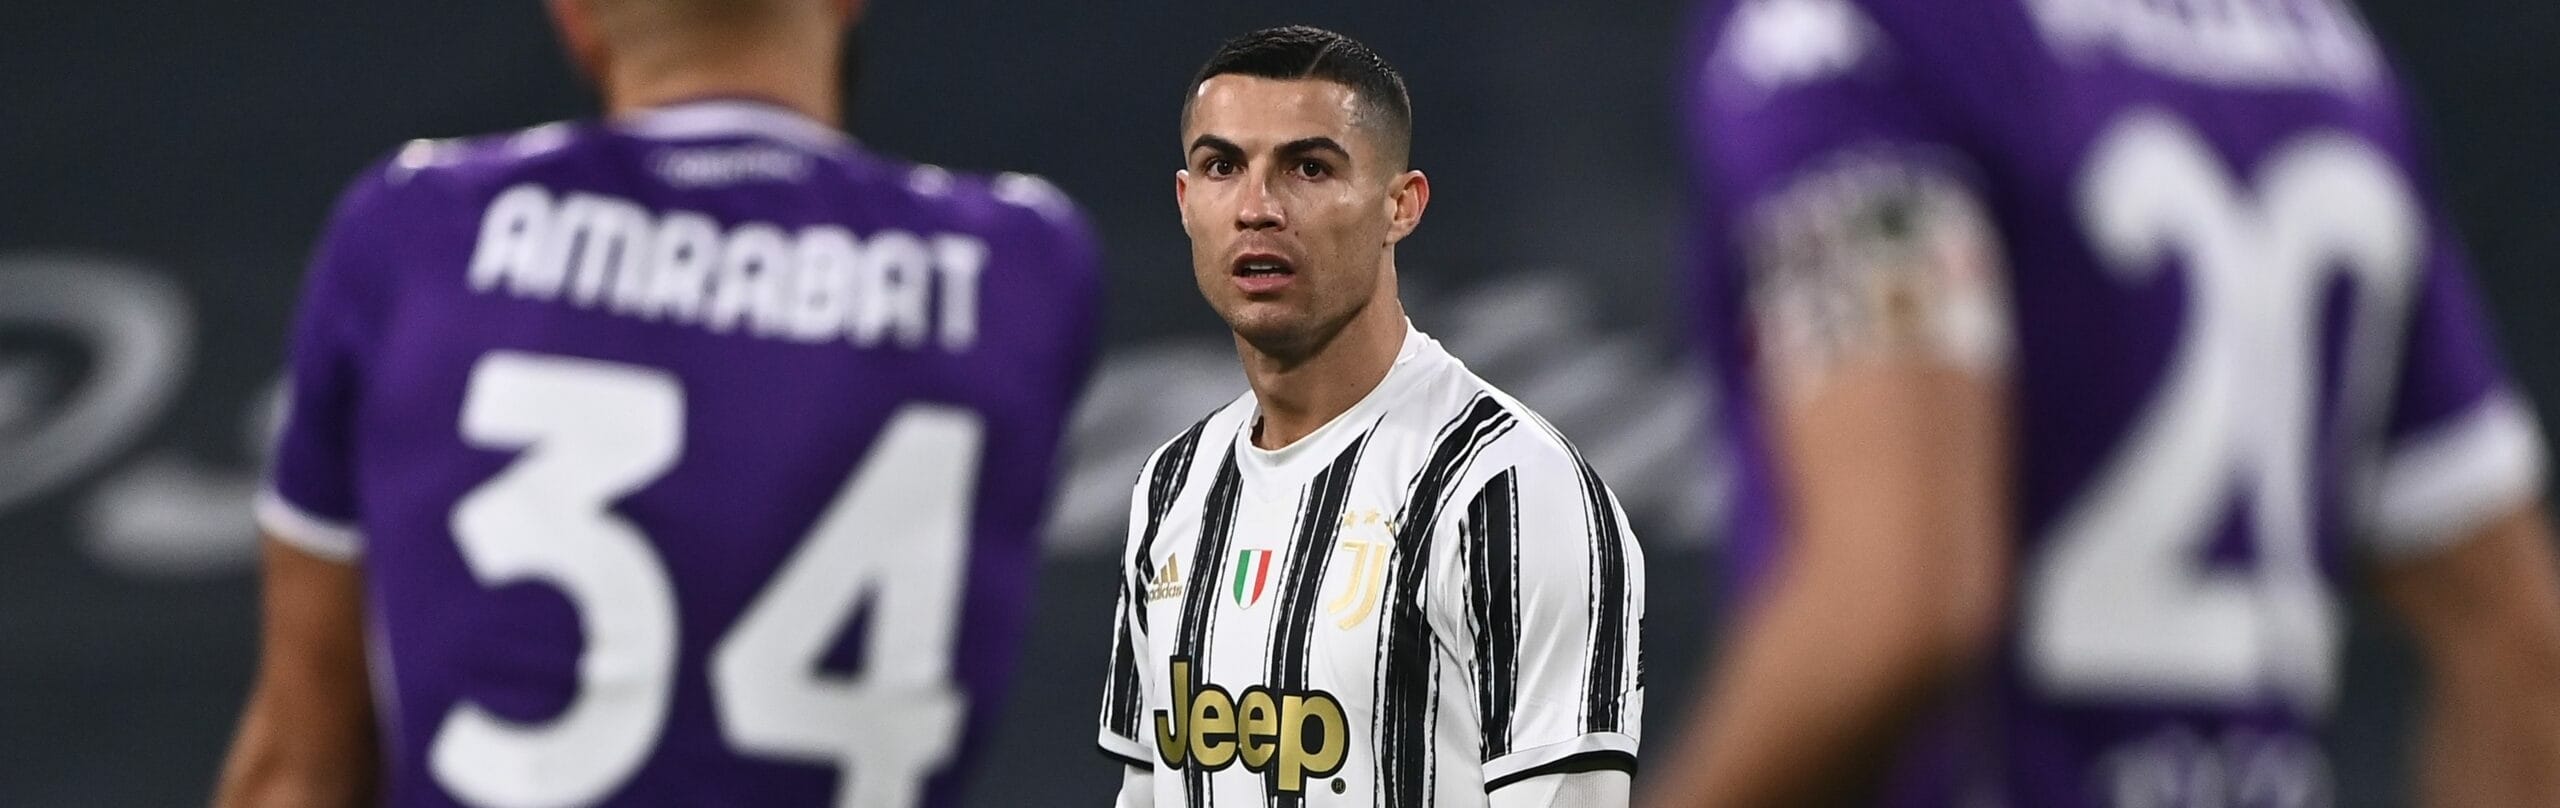 Fiorentina-Juventus: al Franchi Pirlo spera di trovare 3 punti e il vero Cristiano